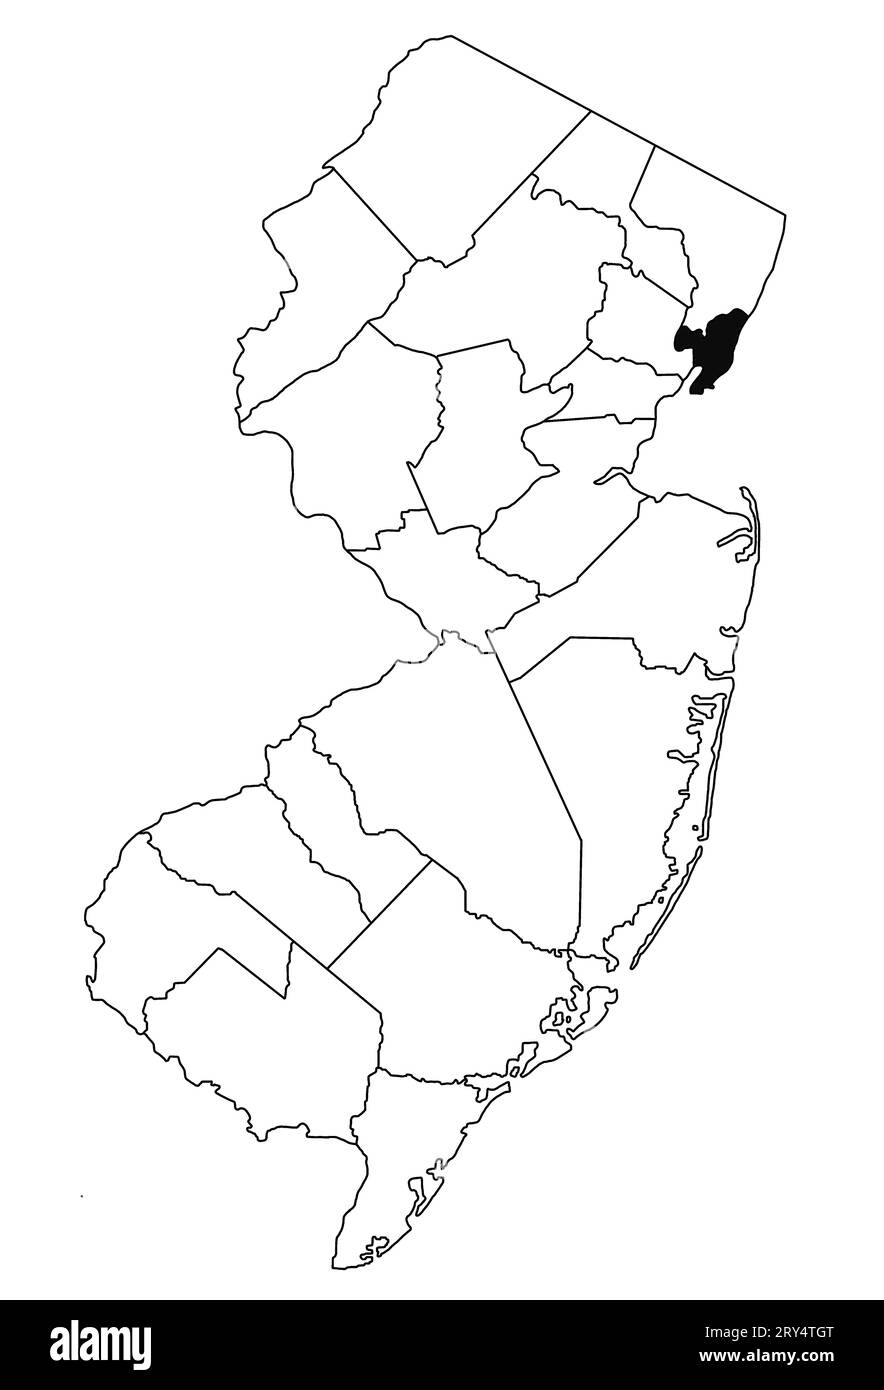 Mapa del condado de Hudson en el estado de Nueva Jersey sobre fondo blanco. Mapa de Condado único resaltado por color negro en el mapa de jersey nuevo. Foto de stock